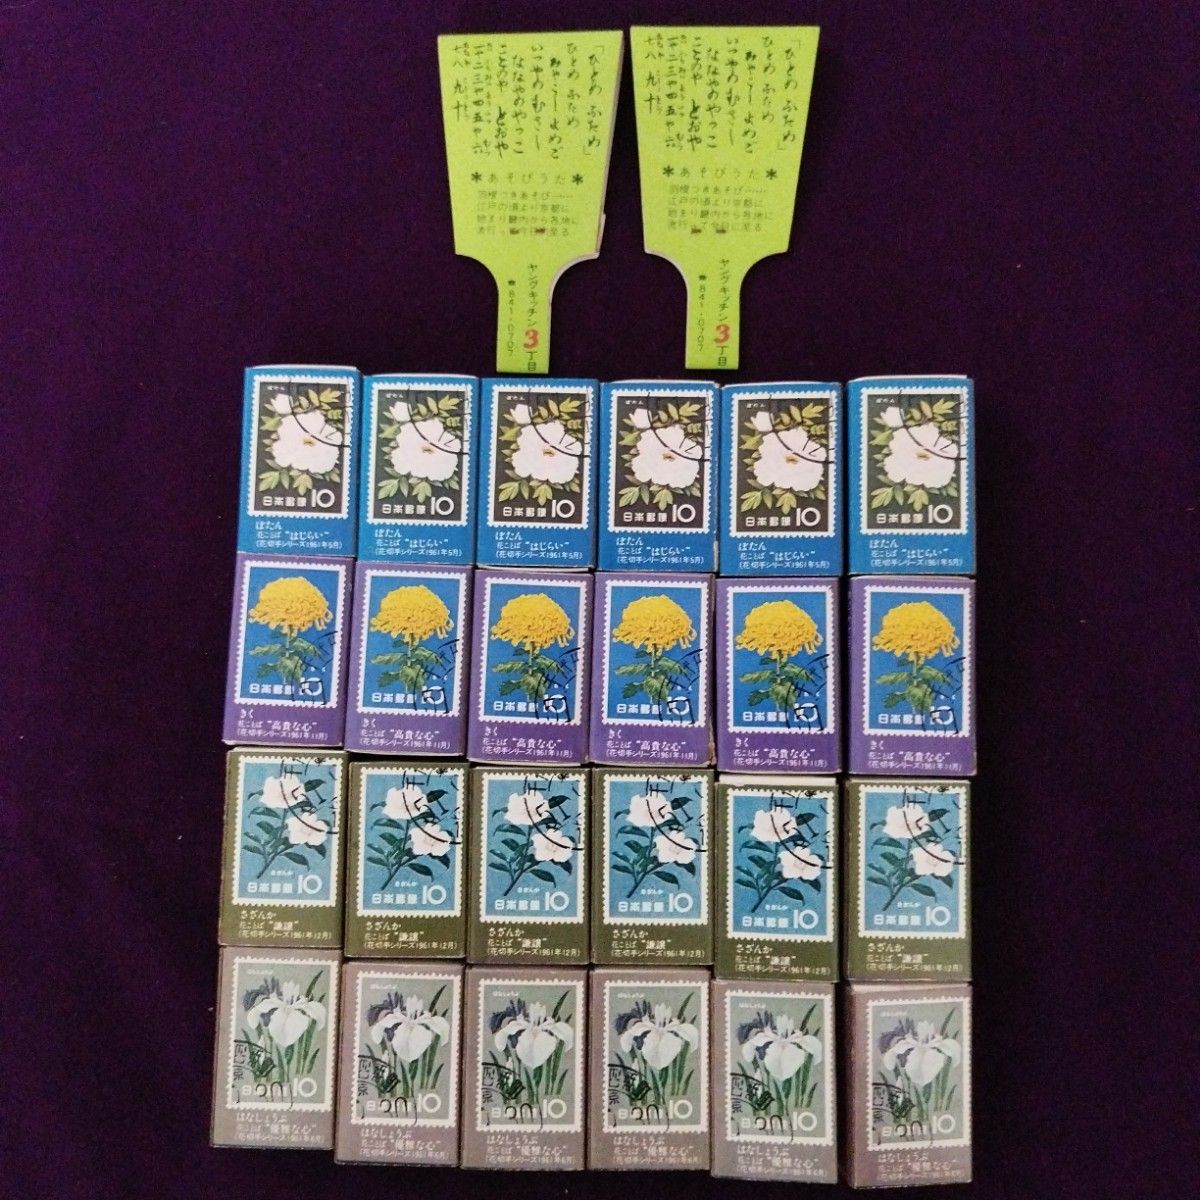 富士銀行花切手デザインのマッチ24箱と羽子板型切手デザインマッチ